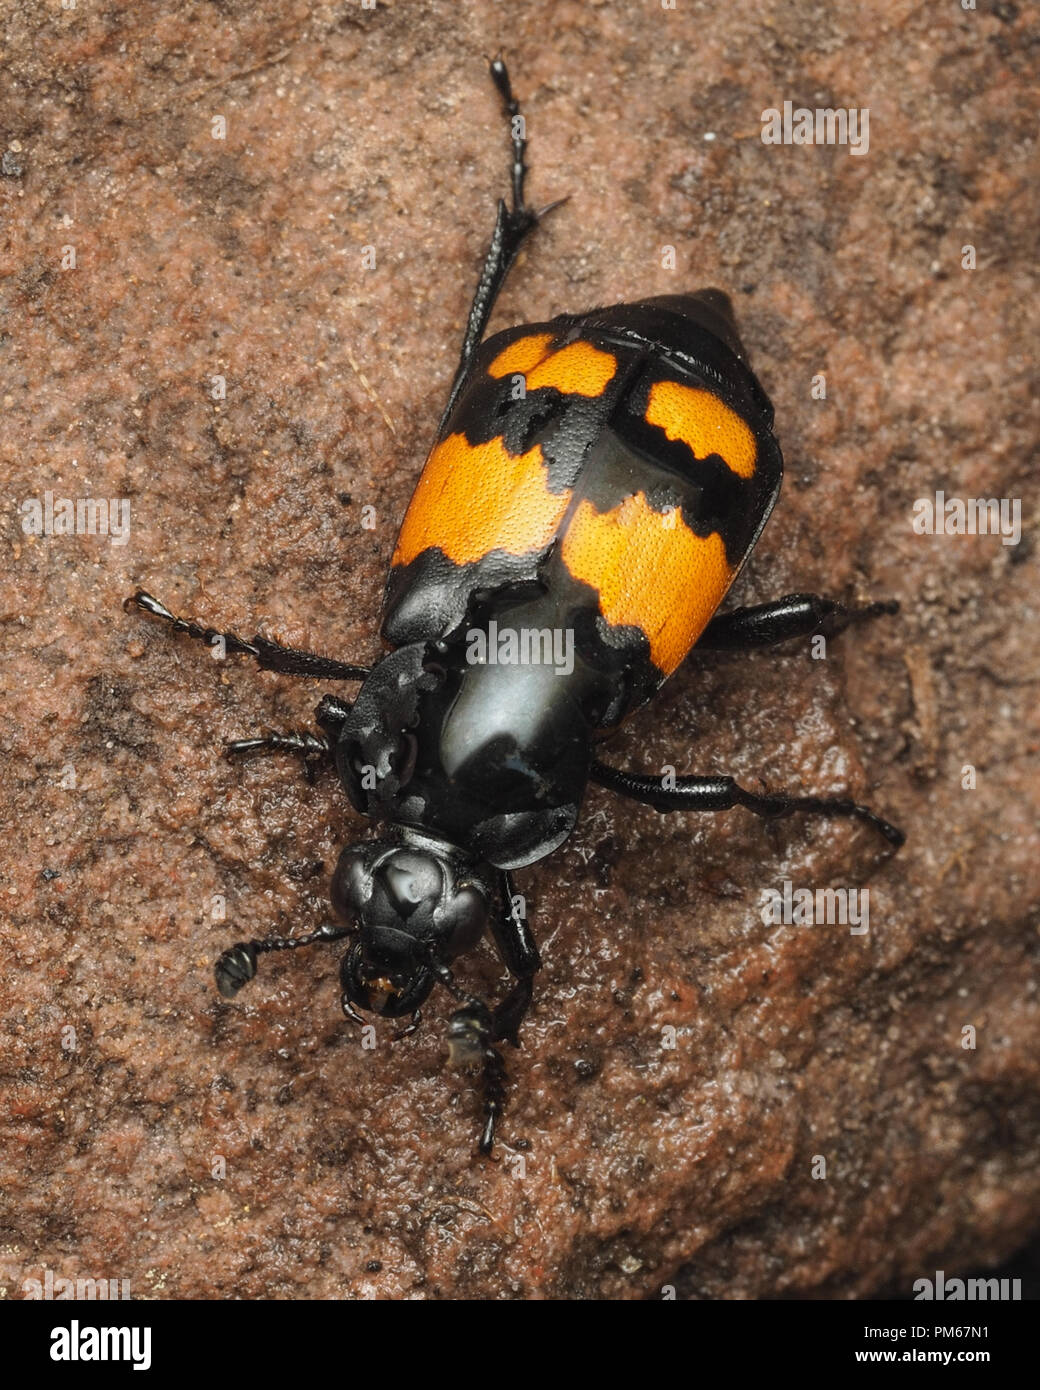 Sexton beetle commun (Nicrophorus vespilloides) ramper sur le roc. Tipperary, Irlande Banque D'Images